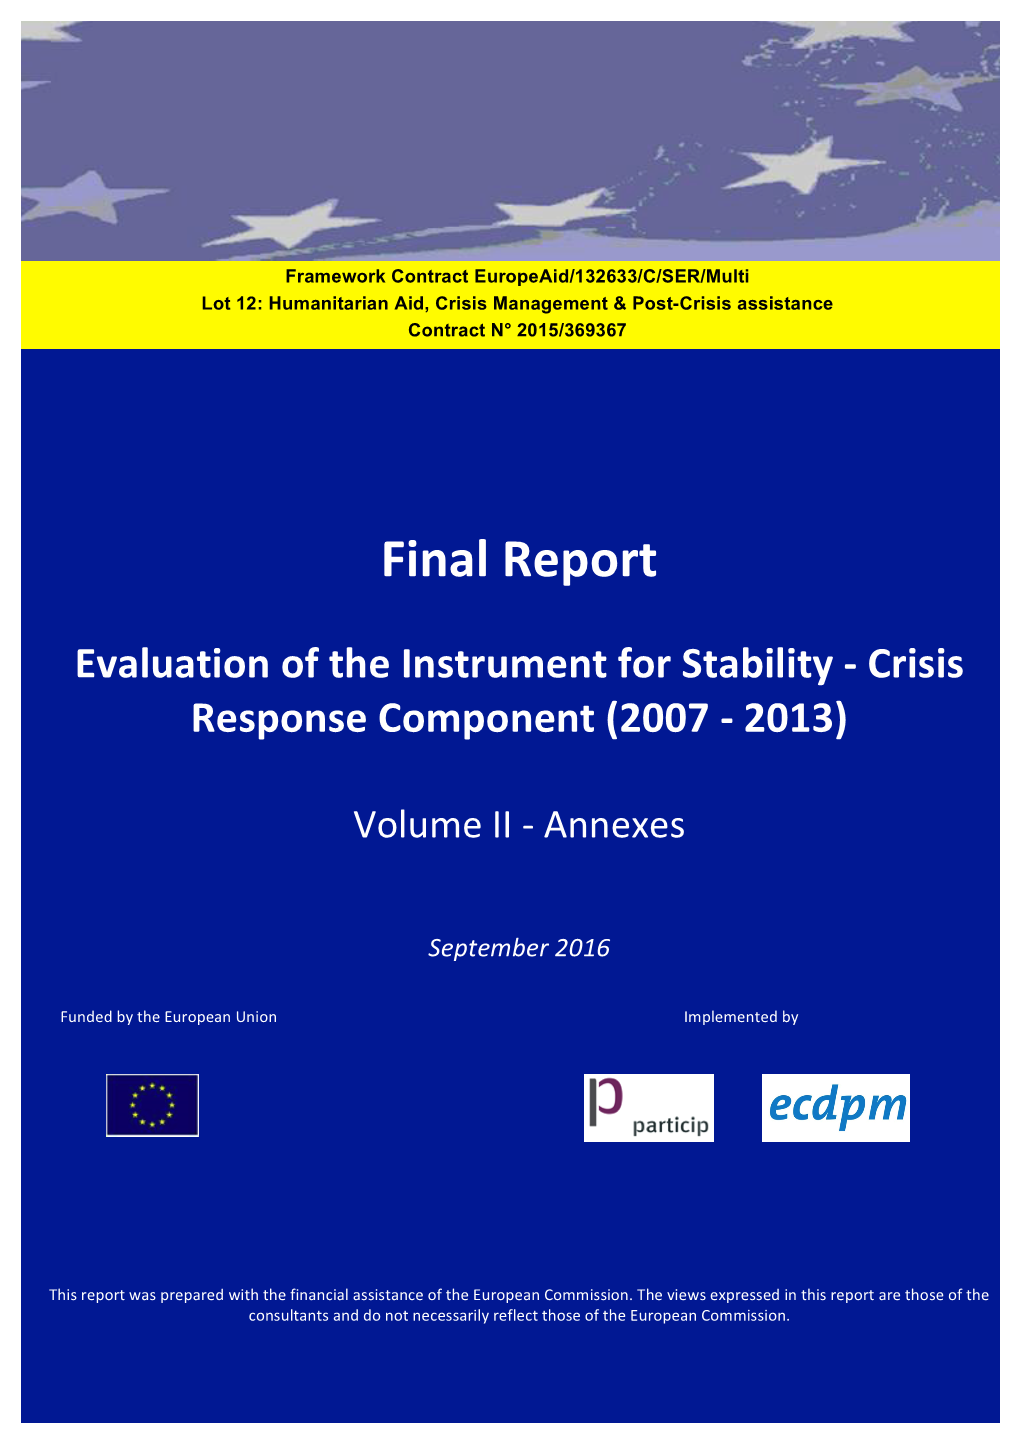 Crisis Reponse Component (2007-2013): Final Report Vol. II